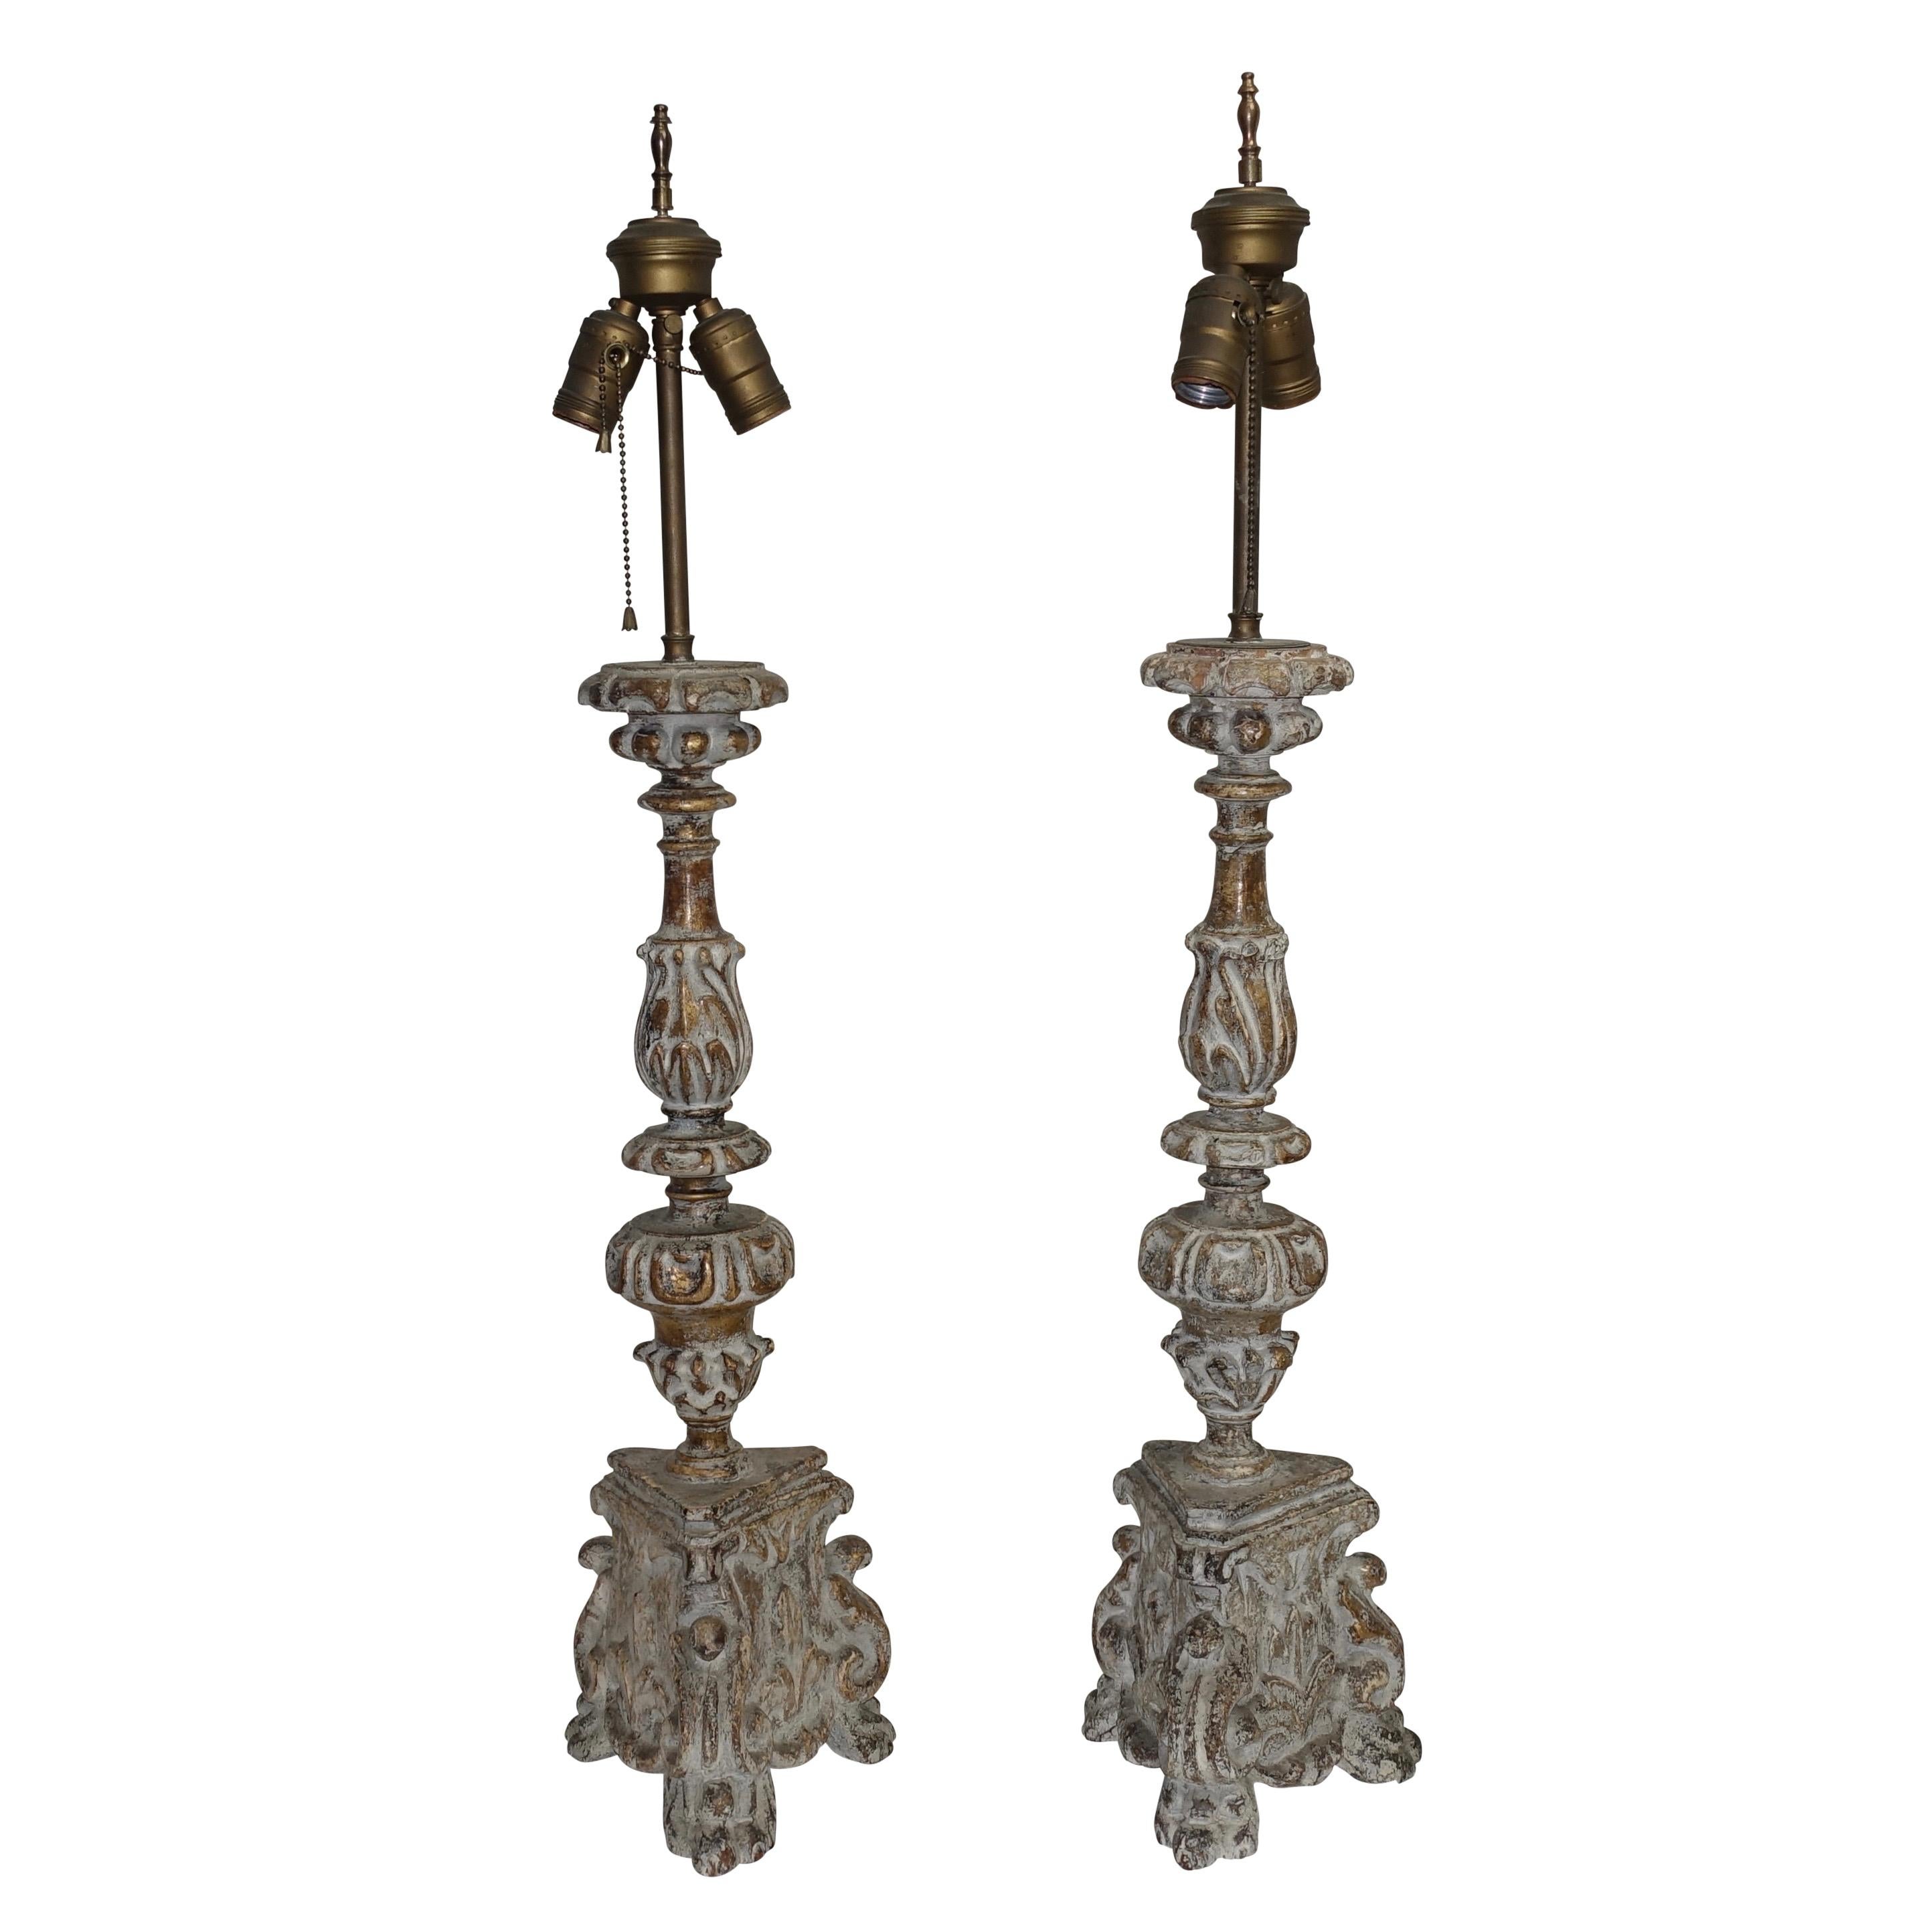 Ein Paar stark geschnitzte Kerzenständer, jetzt als Lampen verdrahtet, mit einem Finish des späteren 20. Frankreich, um 1780.
Kürzlich neu verkabelt mit Doppelsteckdosen. 
Die Lampenschirme sind nicht enthalten.